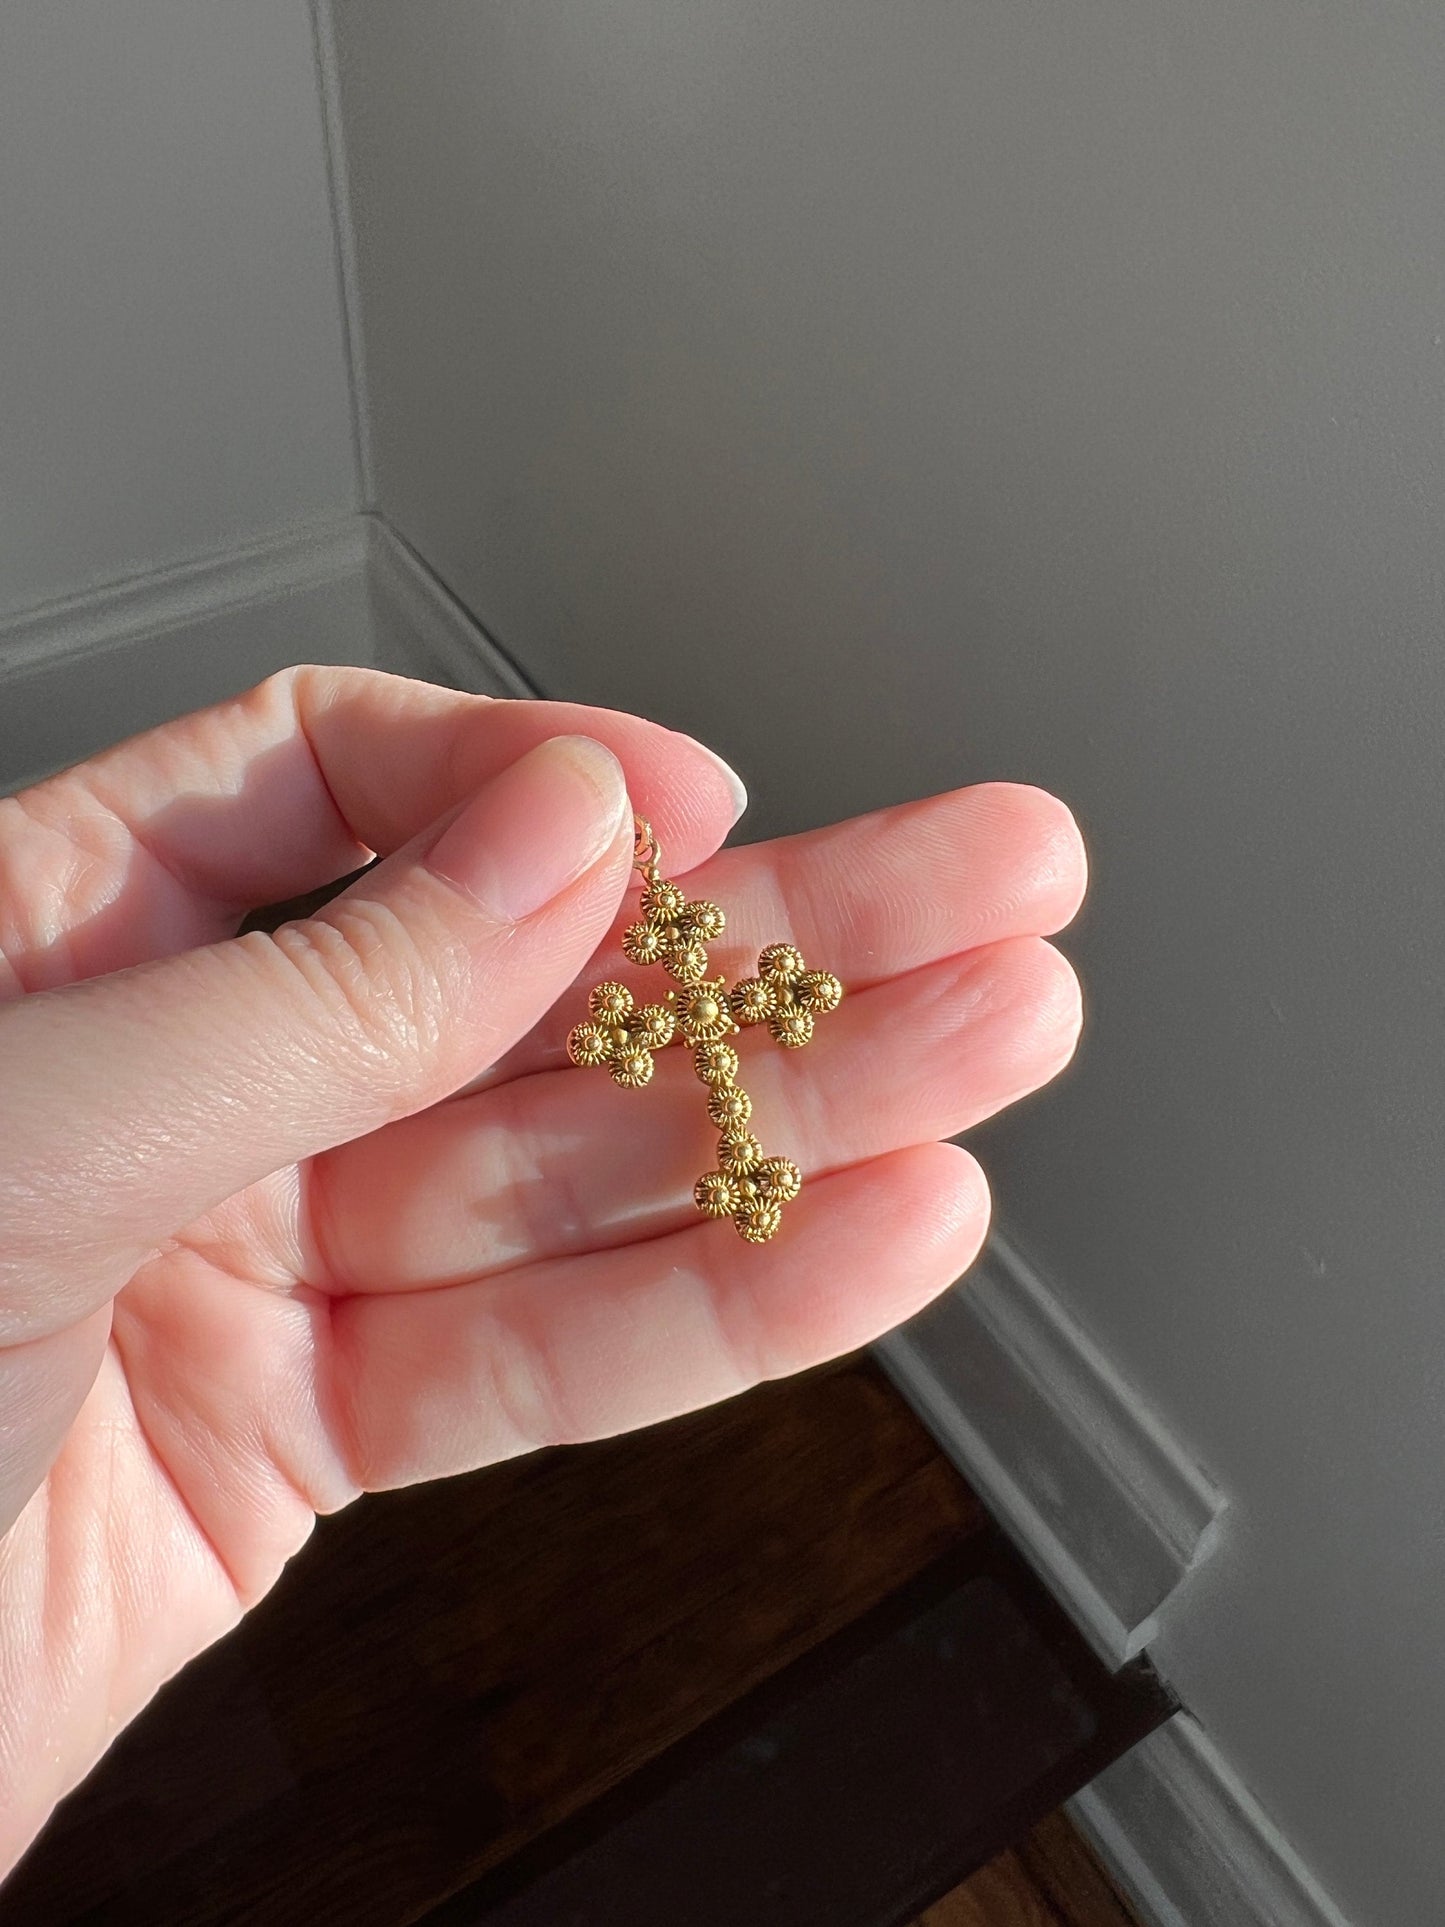 ANTIQUE Cannetille CROSS 18k Gold Pendant Charm Belle Epoque 3D Victorian Little Flowers Rivets Figural Antique Texture Sunburst Starburst